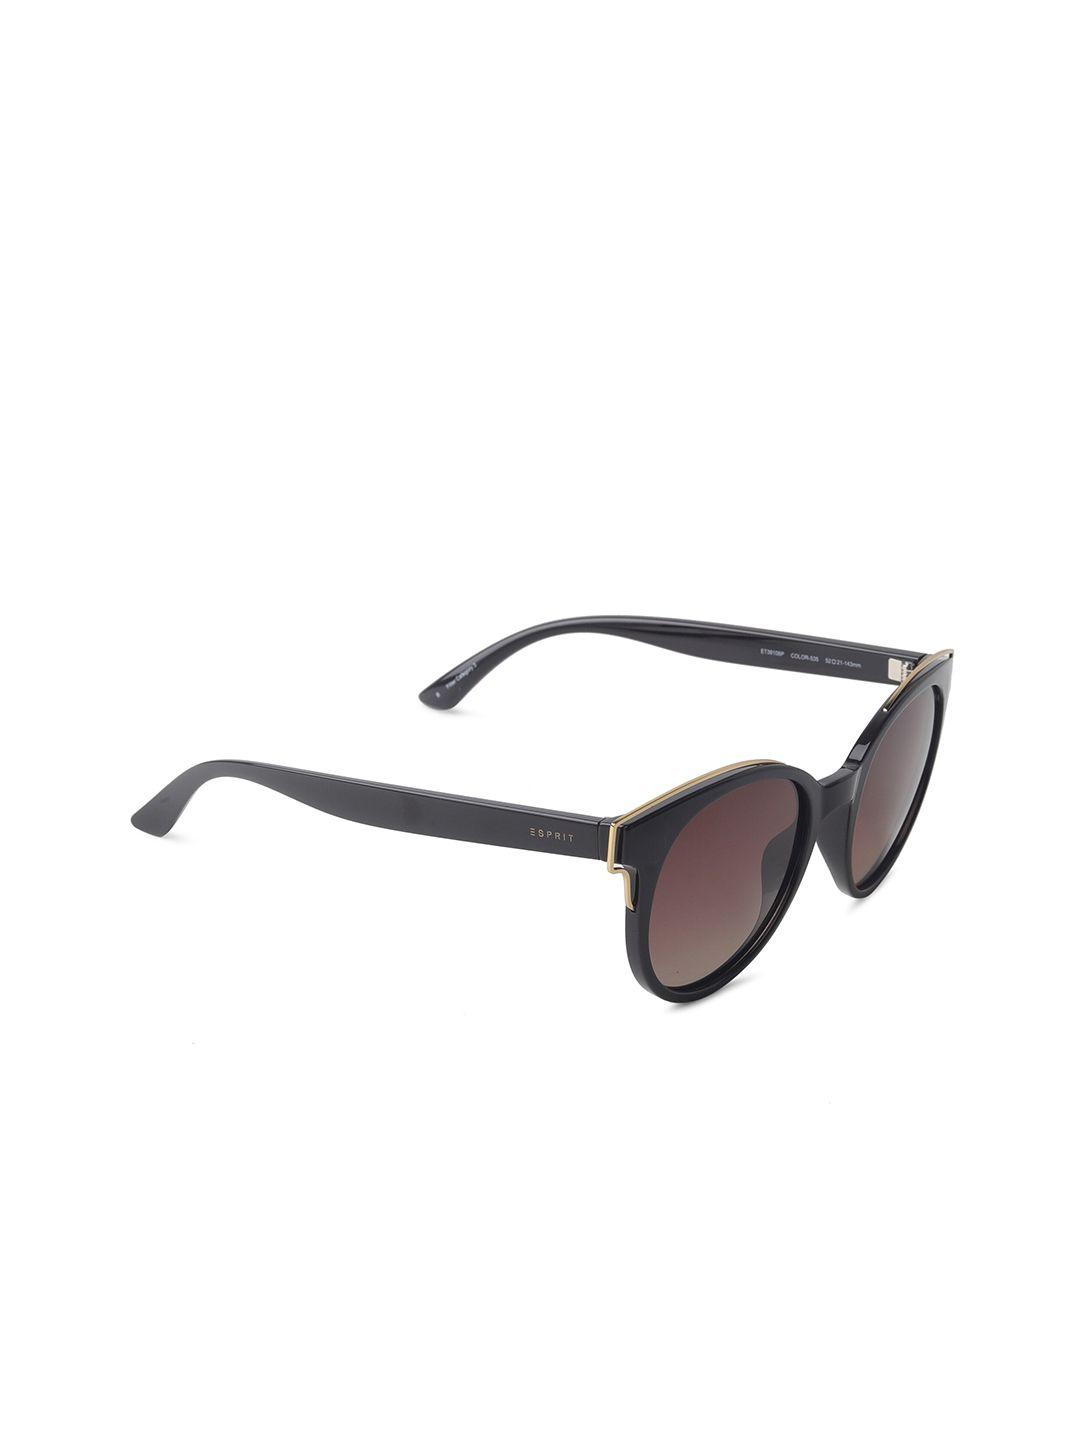 esprit-women-brown-lens-&-black-round-sunglasses-with-polarised-lens-et39106p-52-535